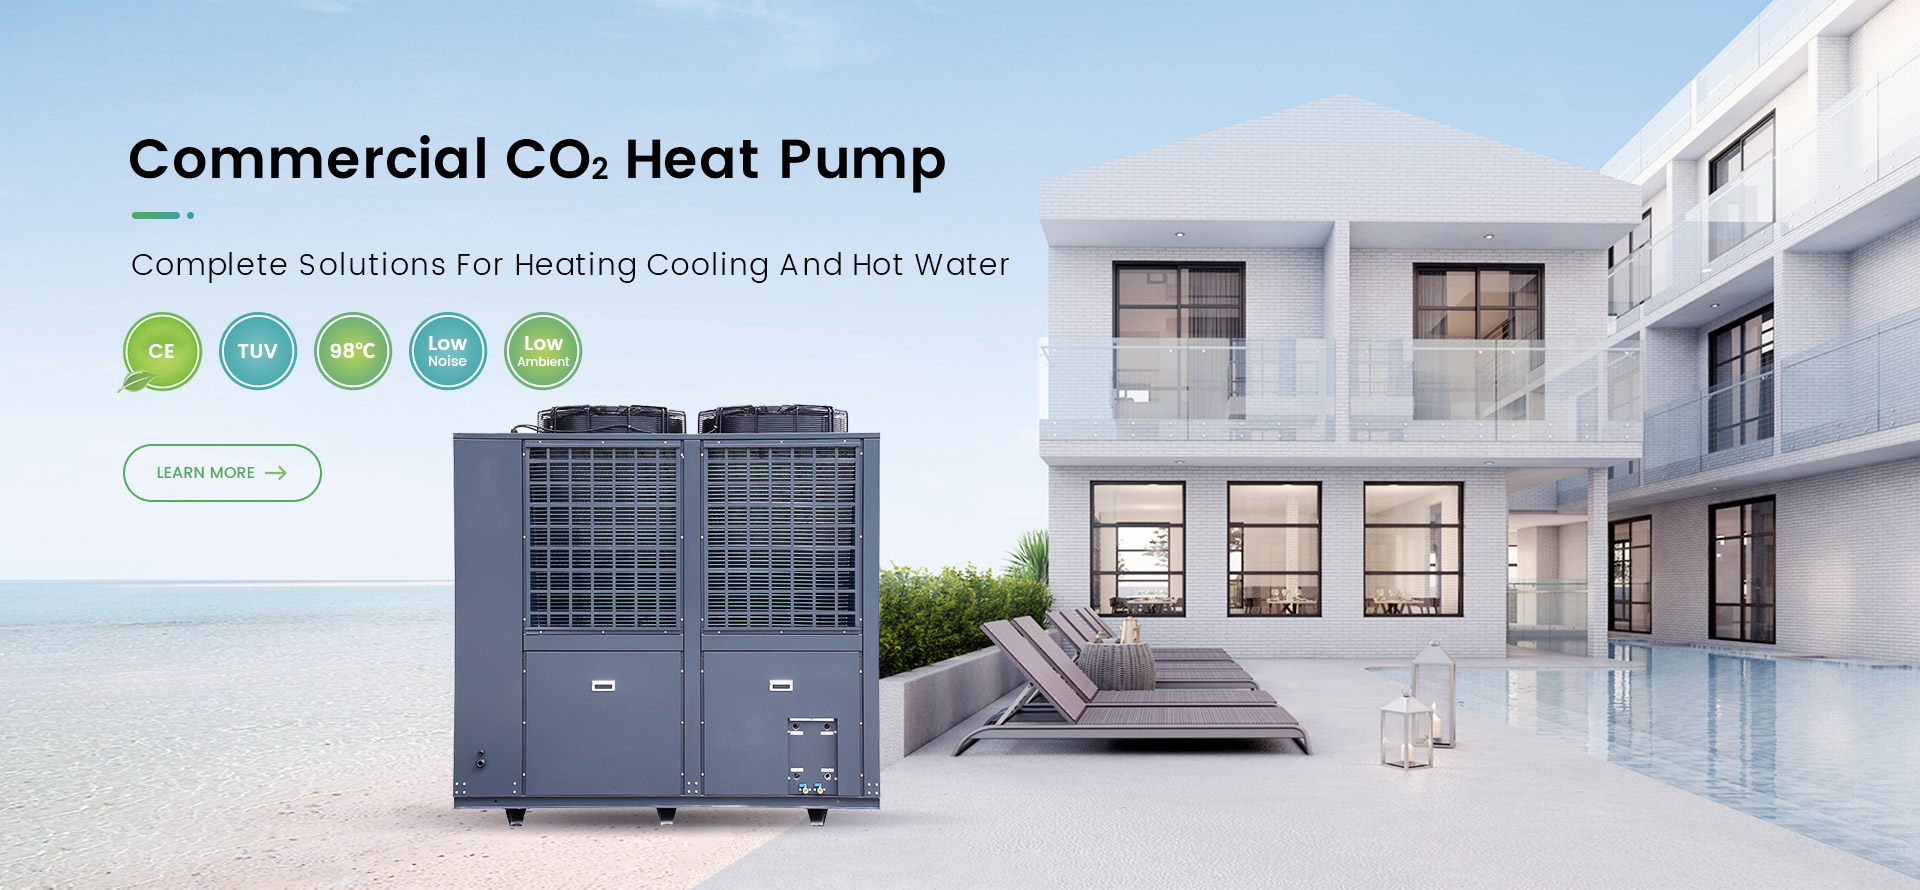 Commercial CO2 Heat Pump